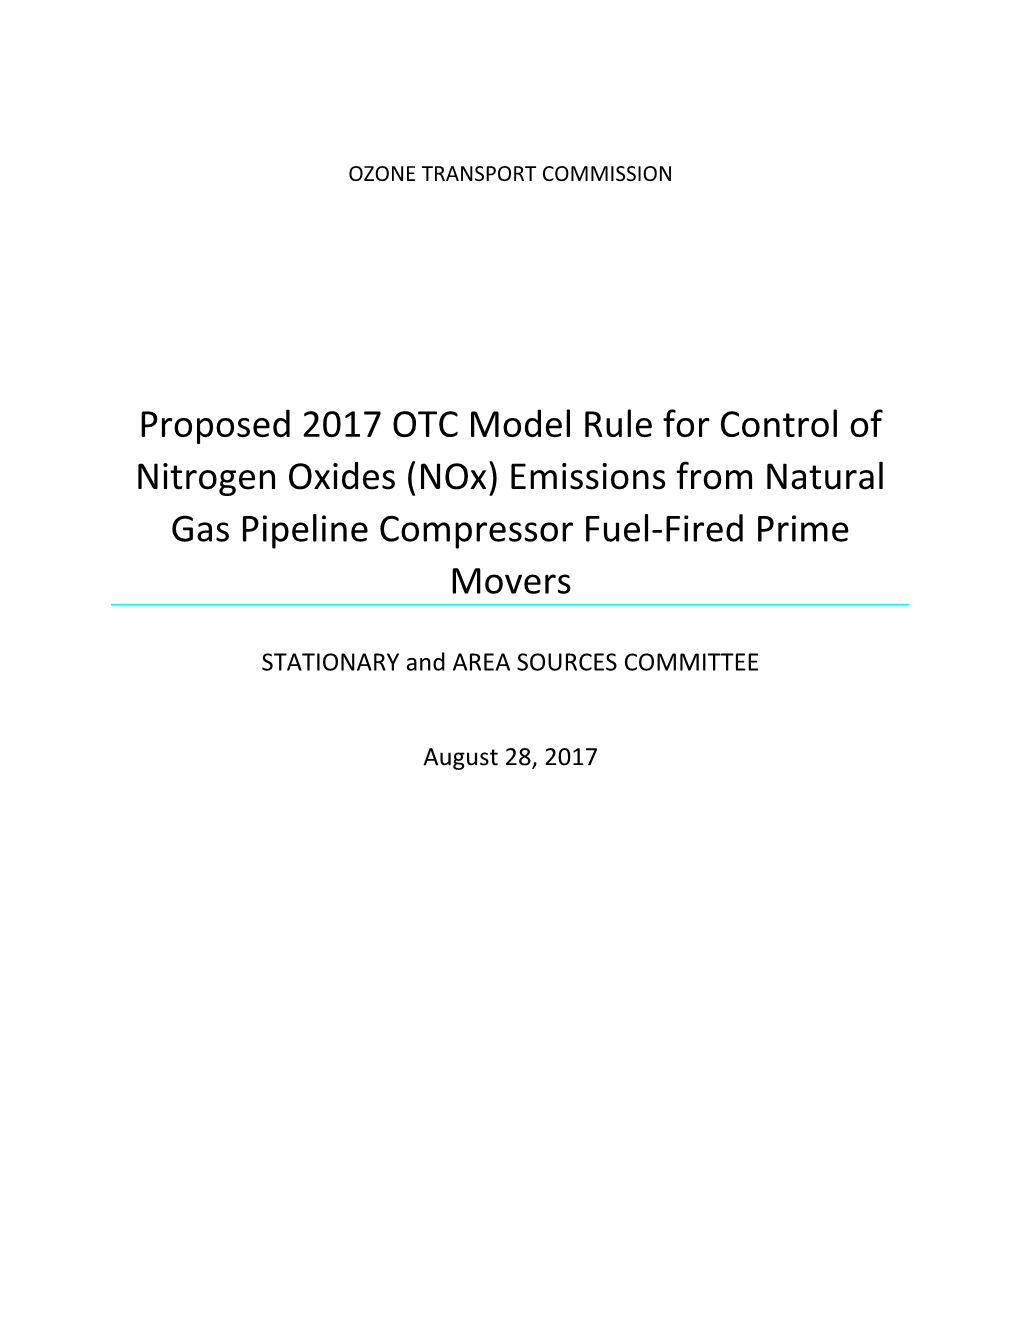 Final Draftnatgas Compressor Modelrule 2017